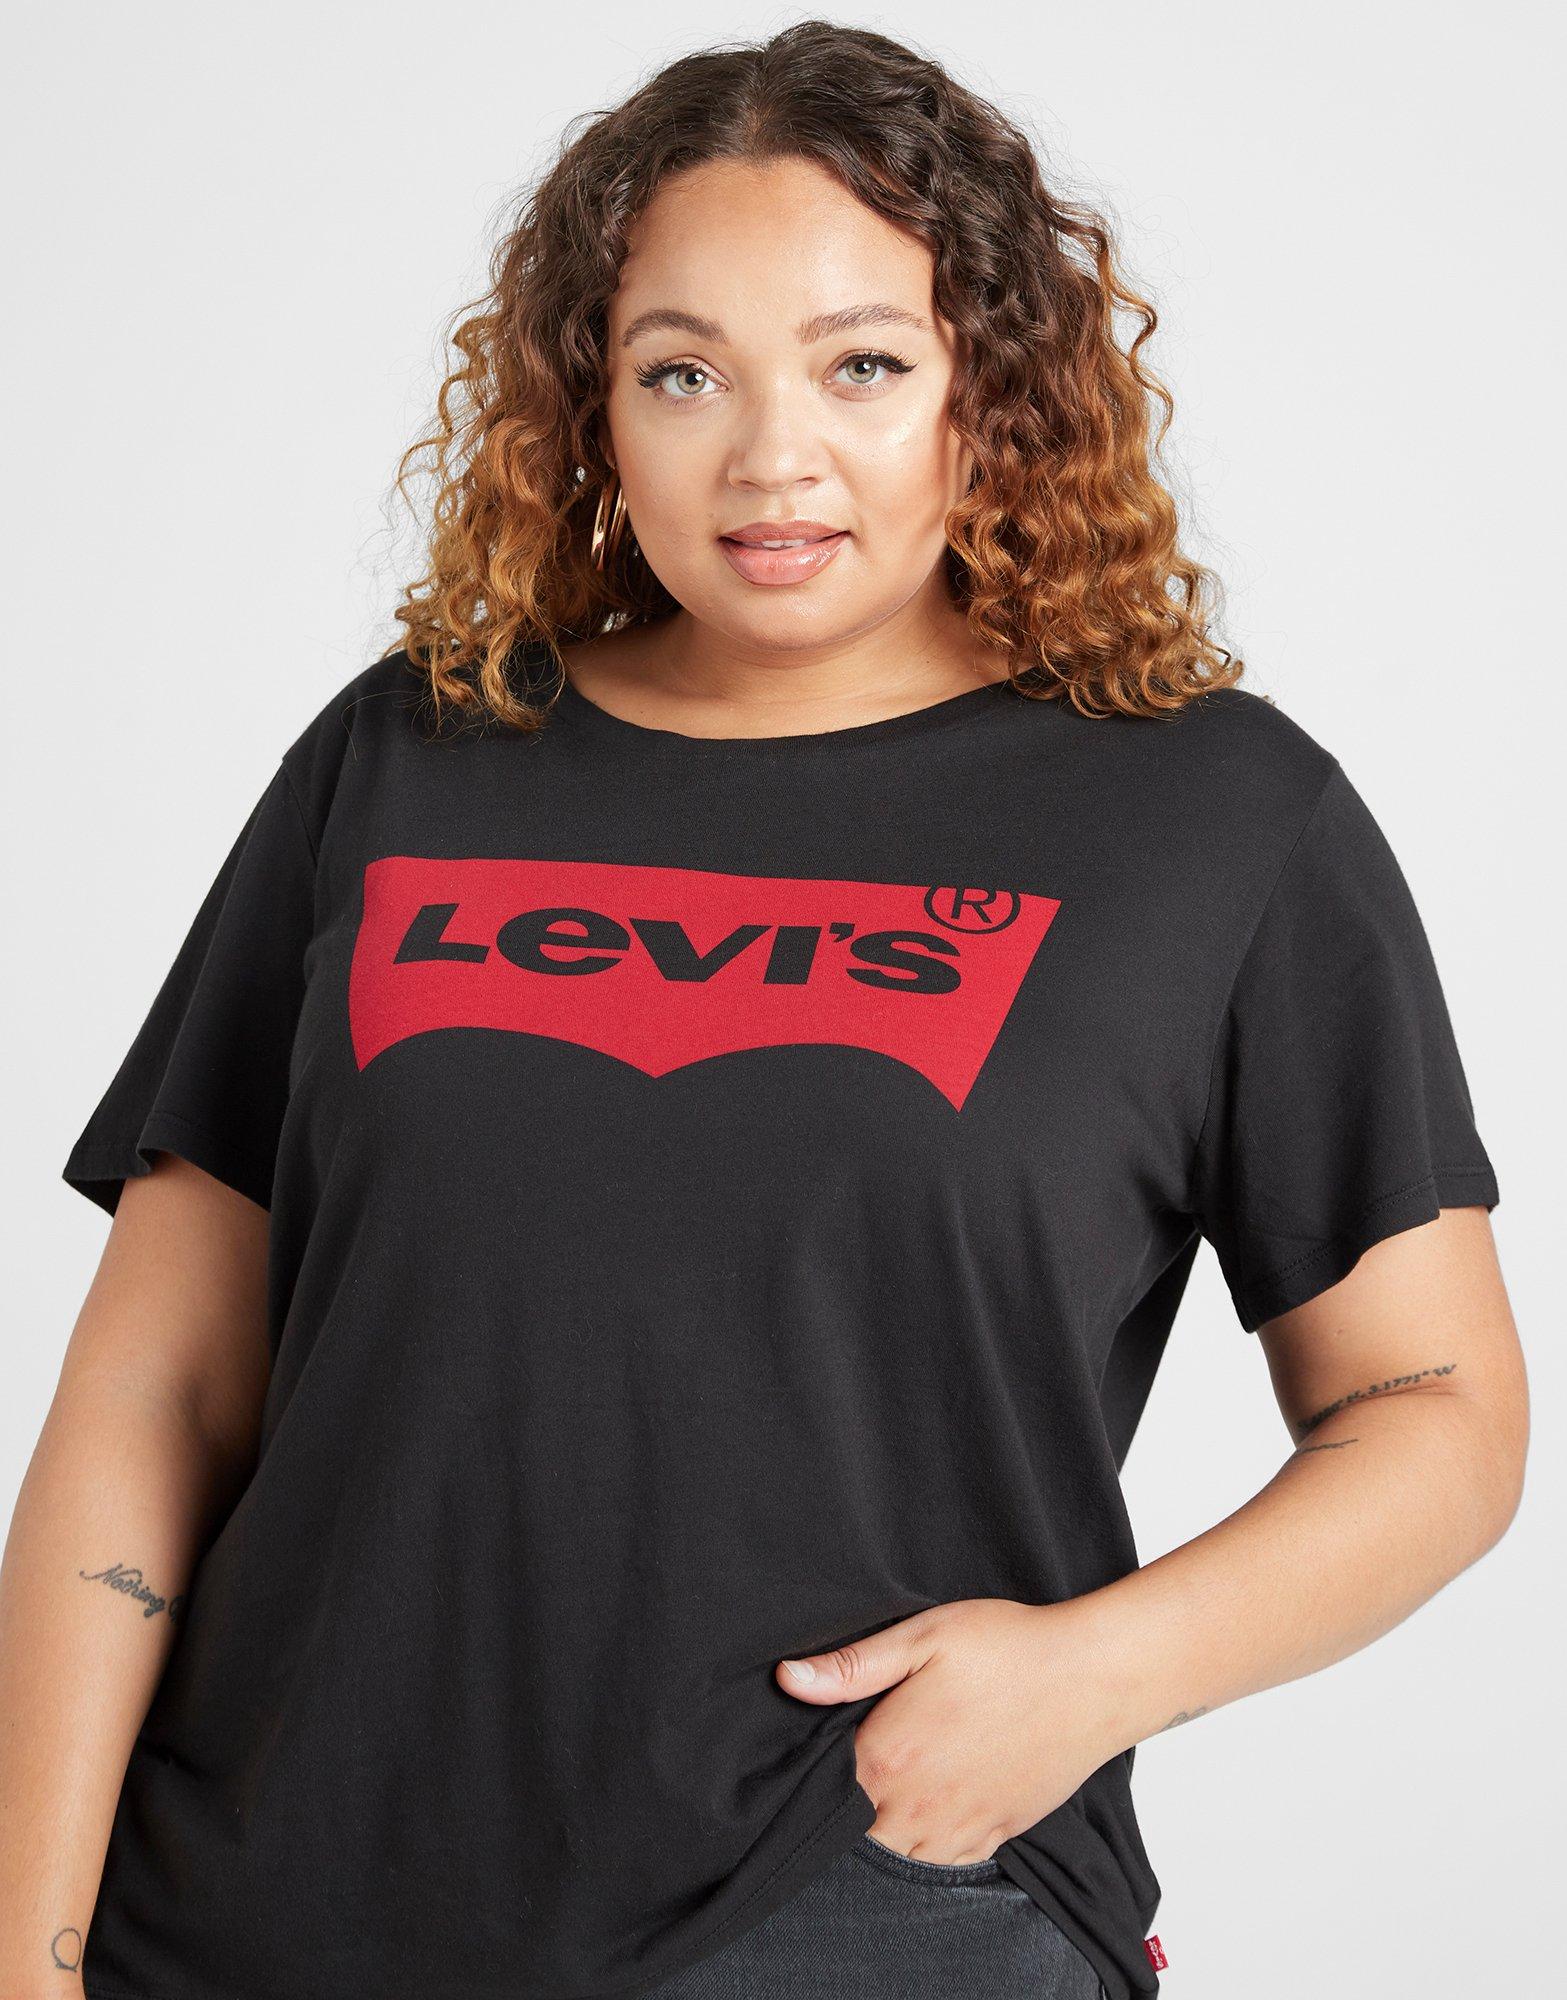 Black Levis Perfect Plus Size T-Shirt 